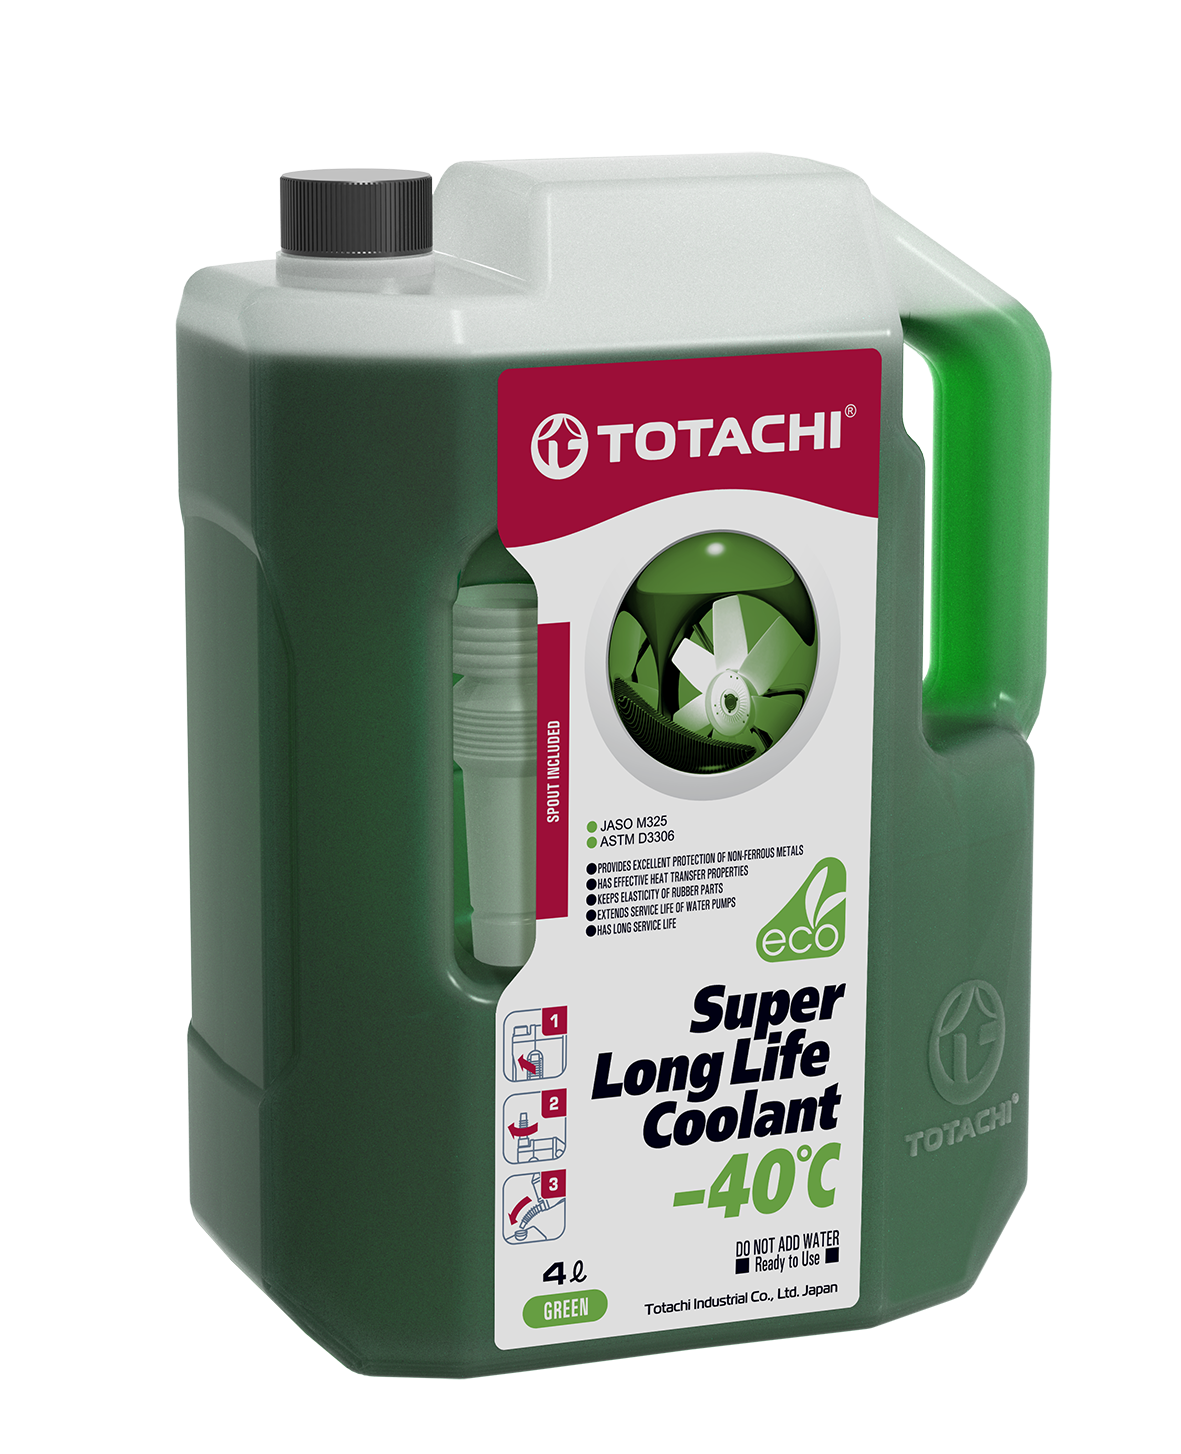 TOTACHI SUPER LONG LIFE COOLANT Green -40°C